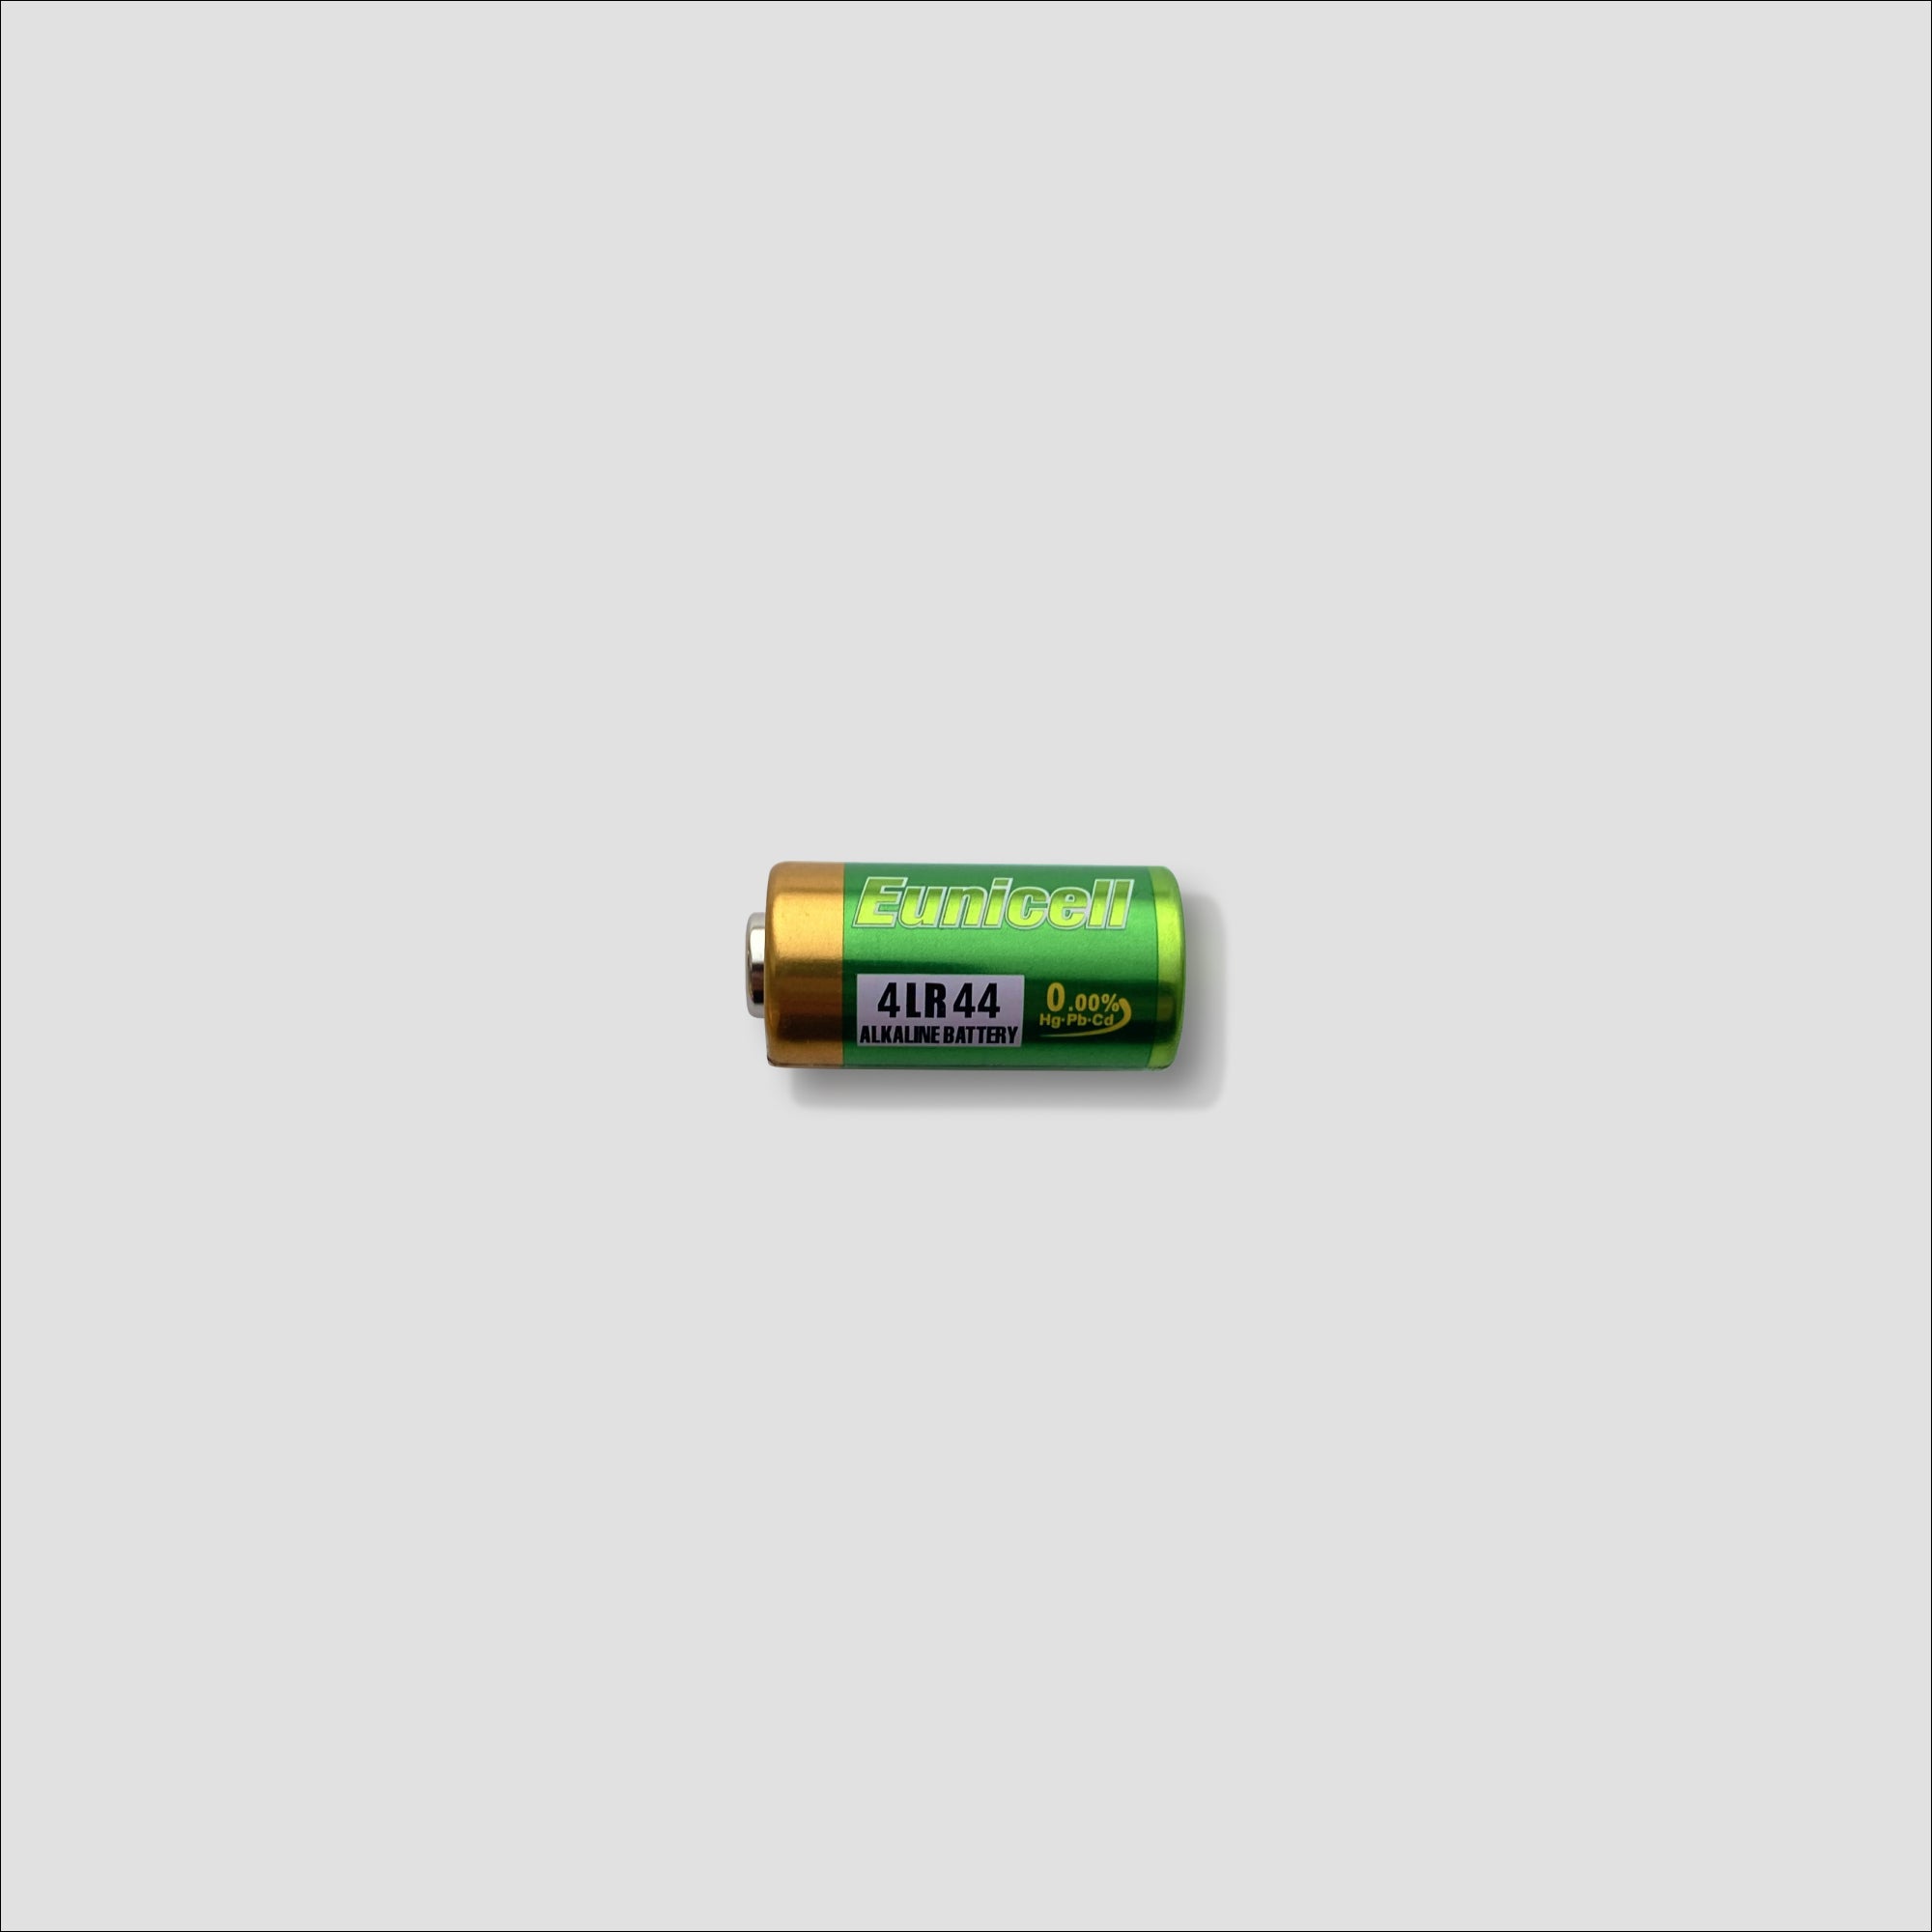 6V battery